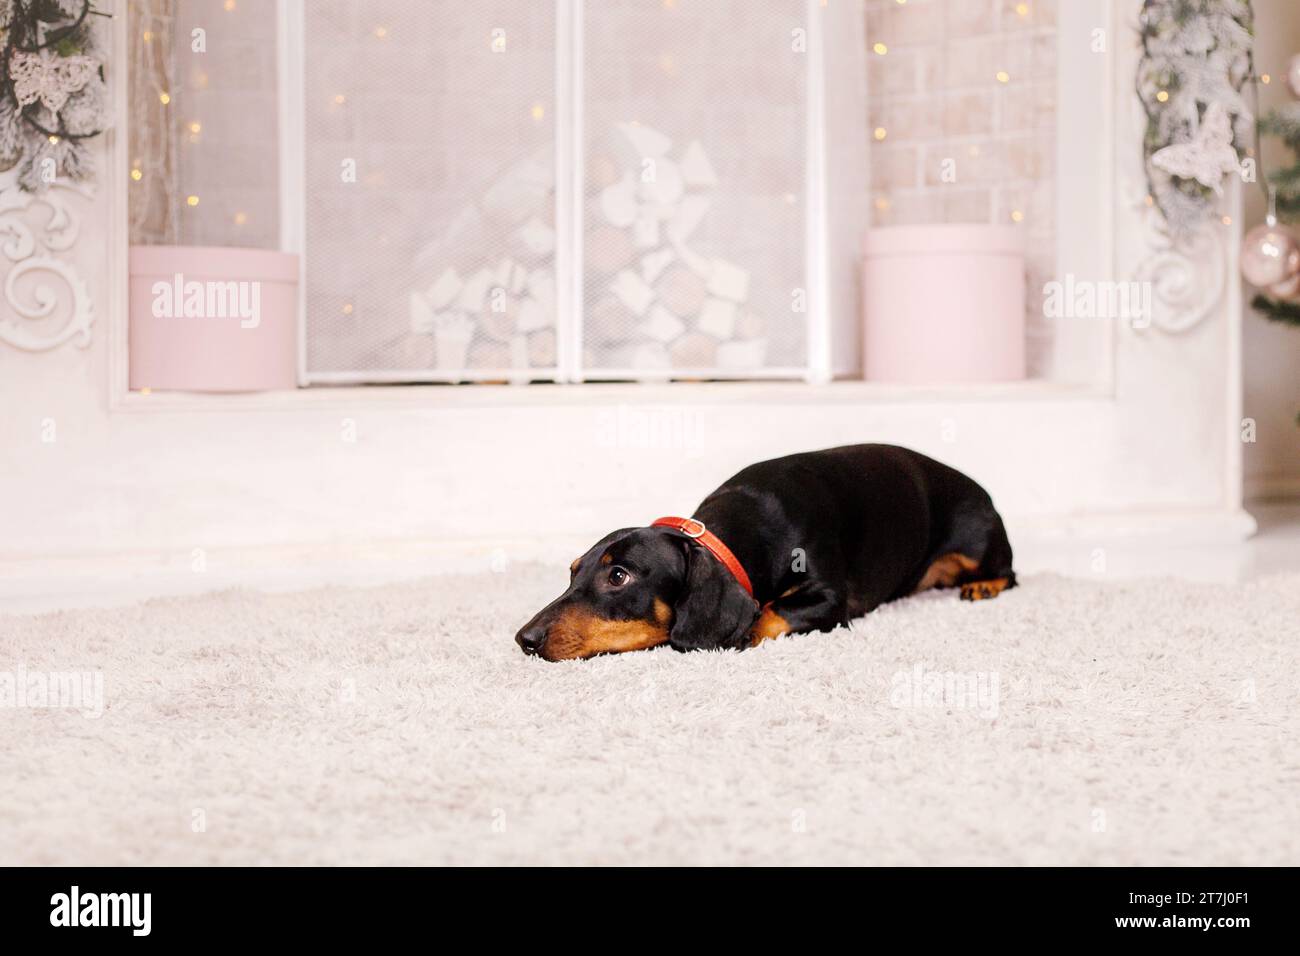 Dachshund dog breed. Happy New Year, Christmas holidays and celebration. Stock Photo